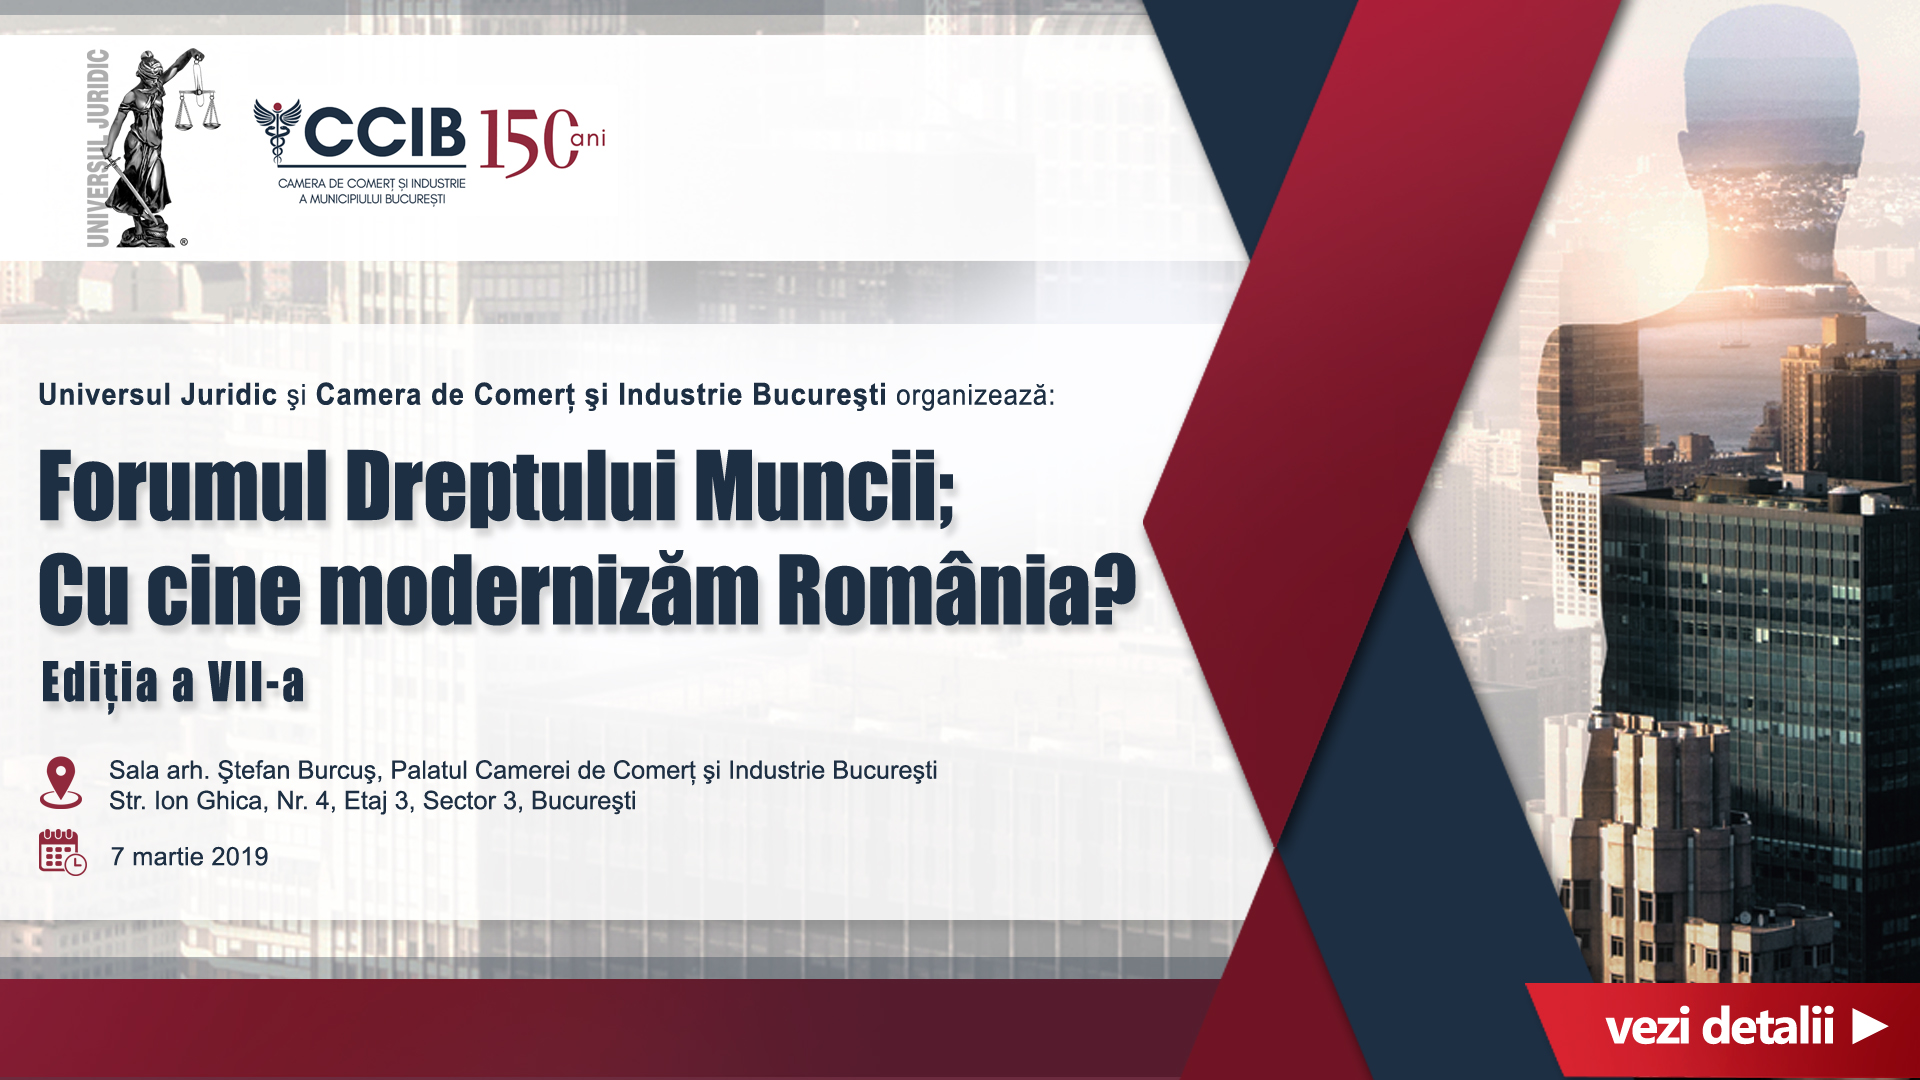 Forumul Dreptului Muncii Cu cine modernizam Romania_1920X1080